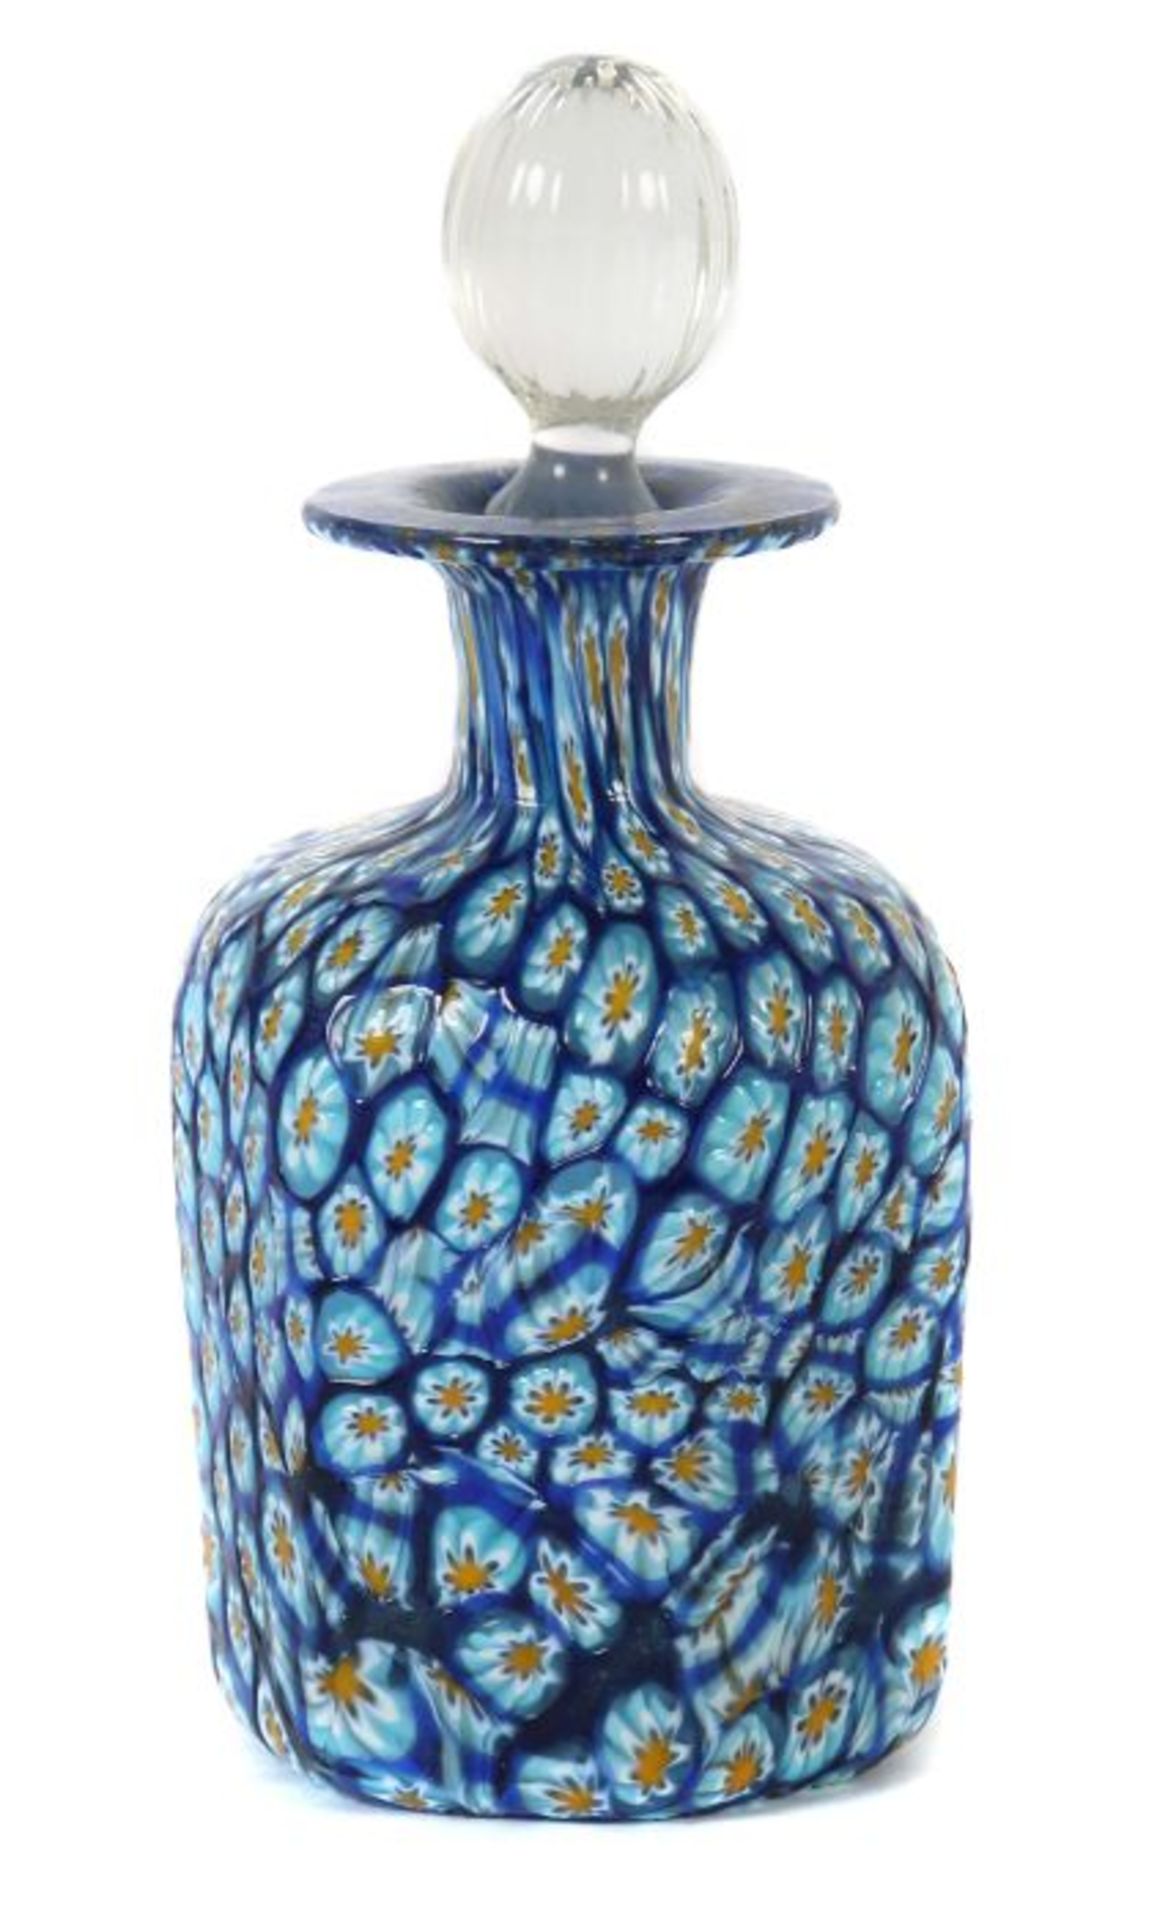 Millefiori-Flakon Murano, 1960er/70er Jahre, farbloses Glas mit aufgeschmolzenen Murrine in